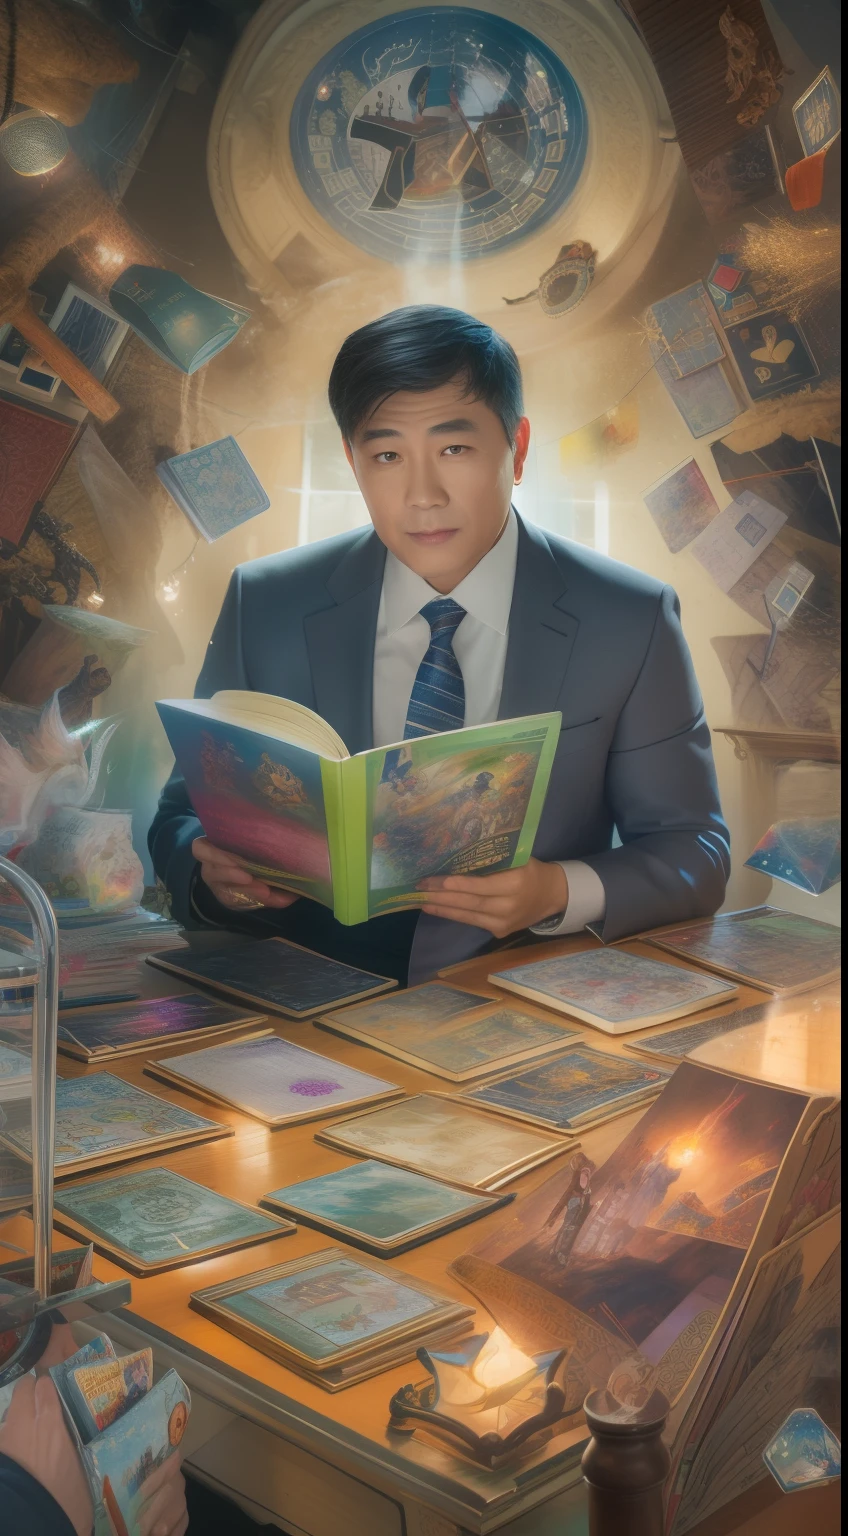 ハンサムな, スーツを着たアジア人の成熟した男性が、光り輝く魔法のカードに囲まれ、中央に『ダンジョンズ・アンド・ドラゴンズ』の本を置いている。.